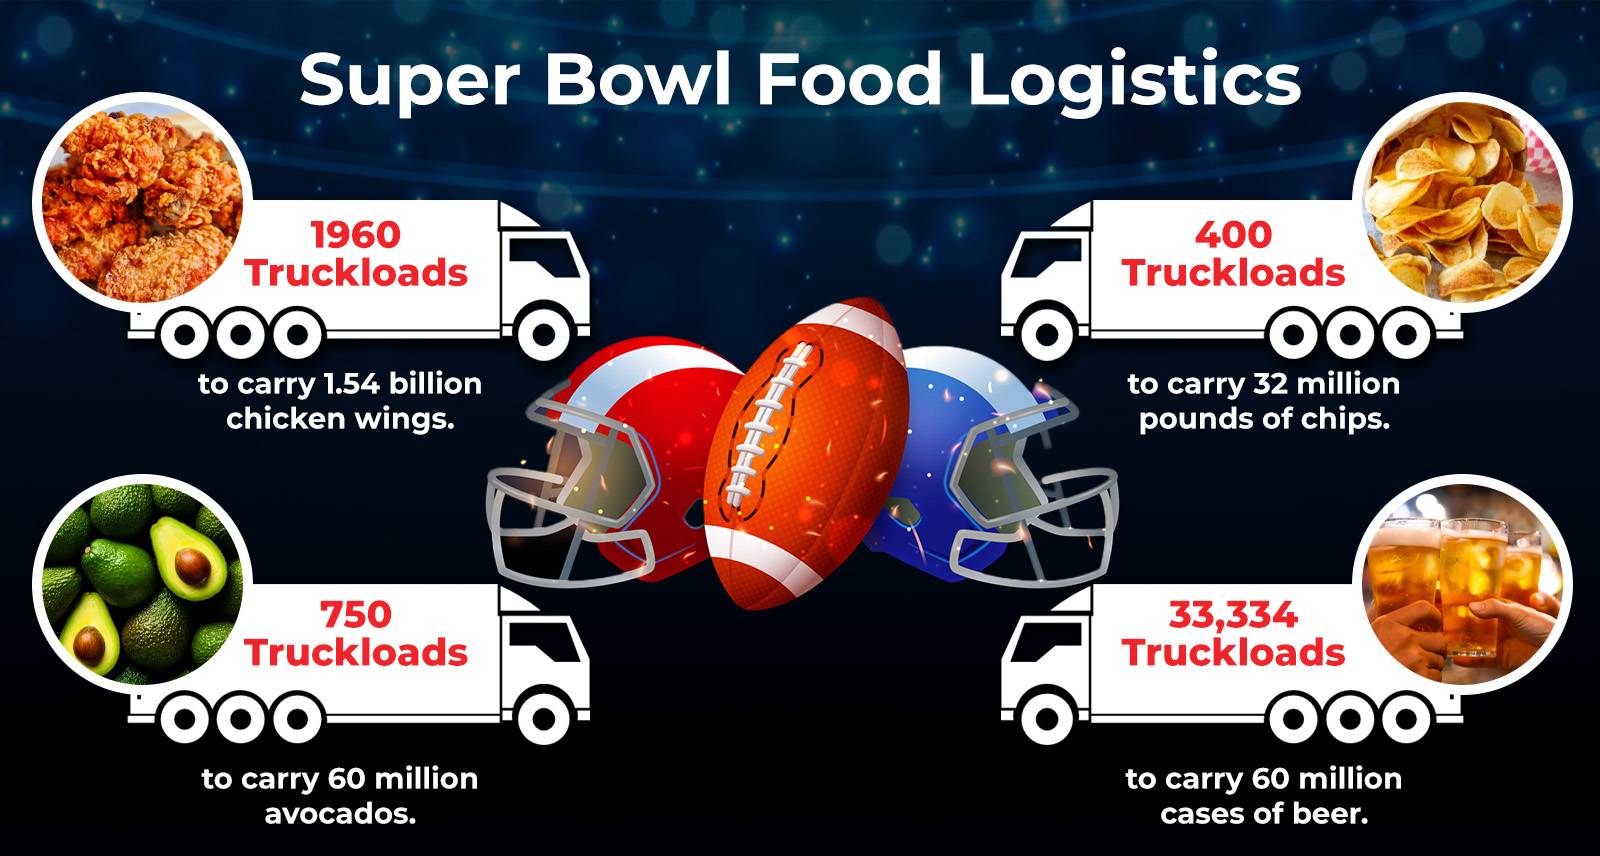 Food Logistics for Super Bowl